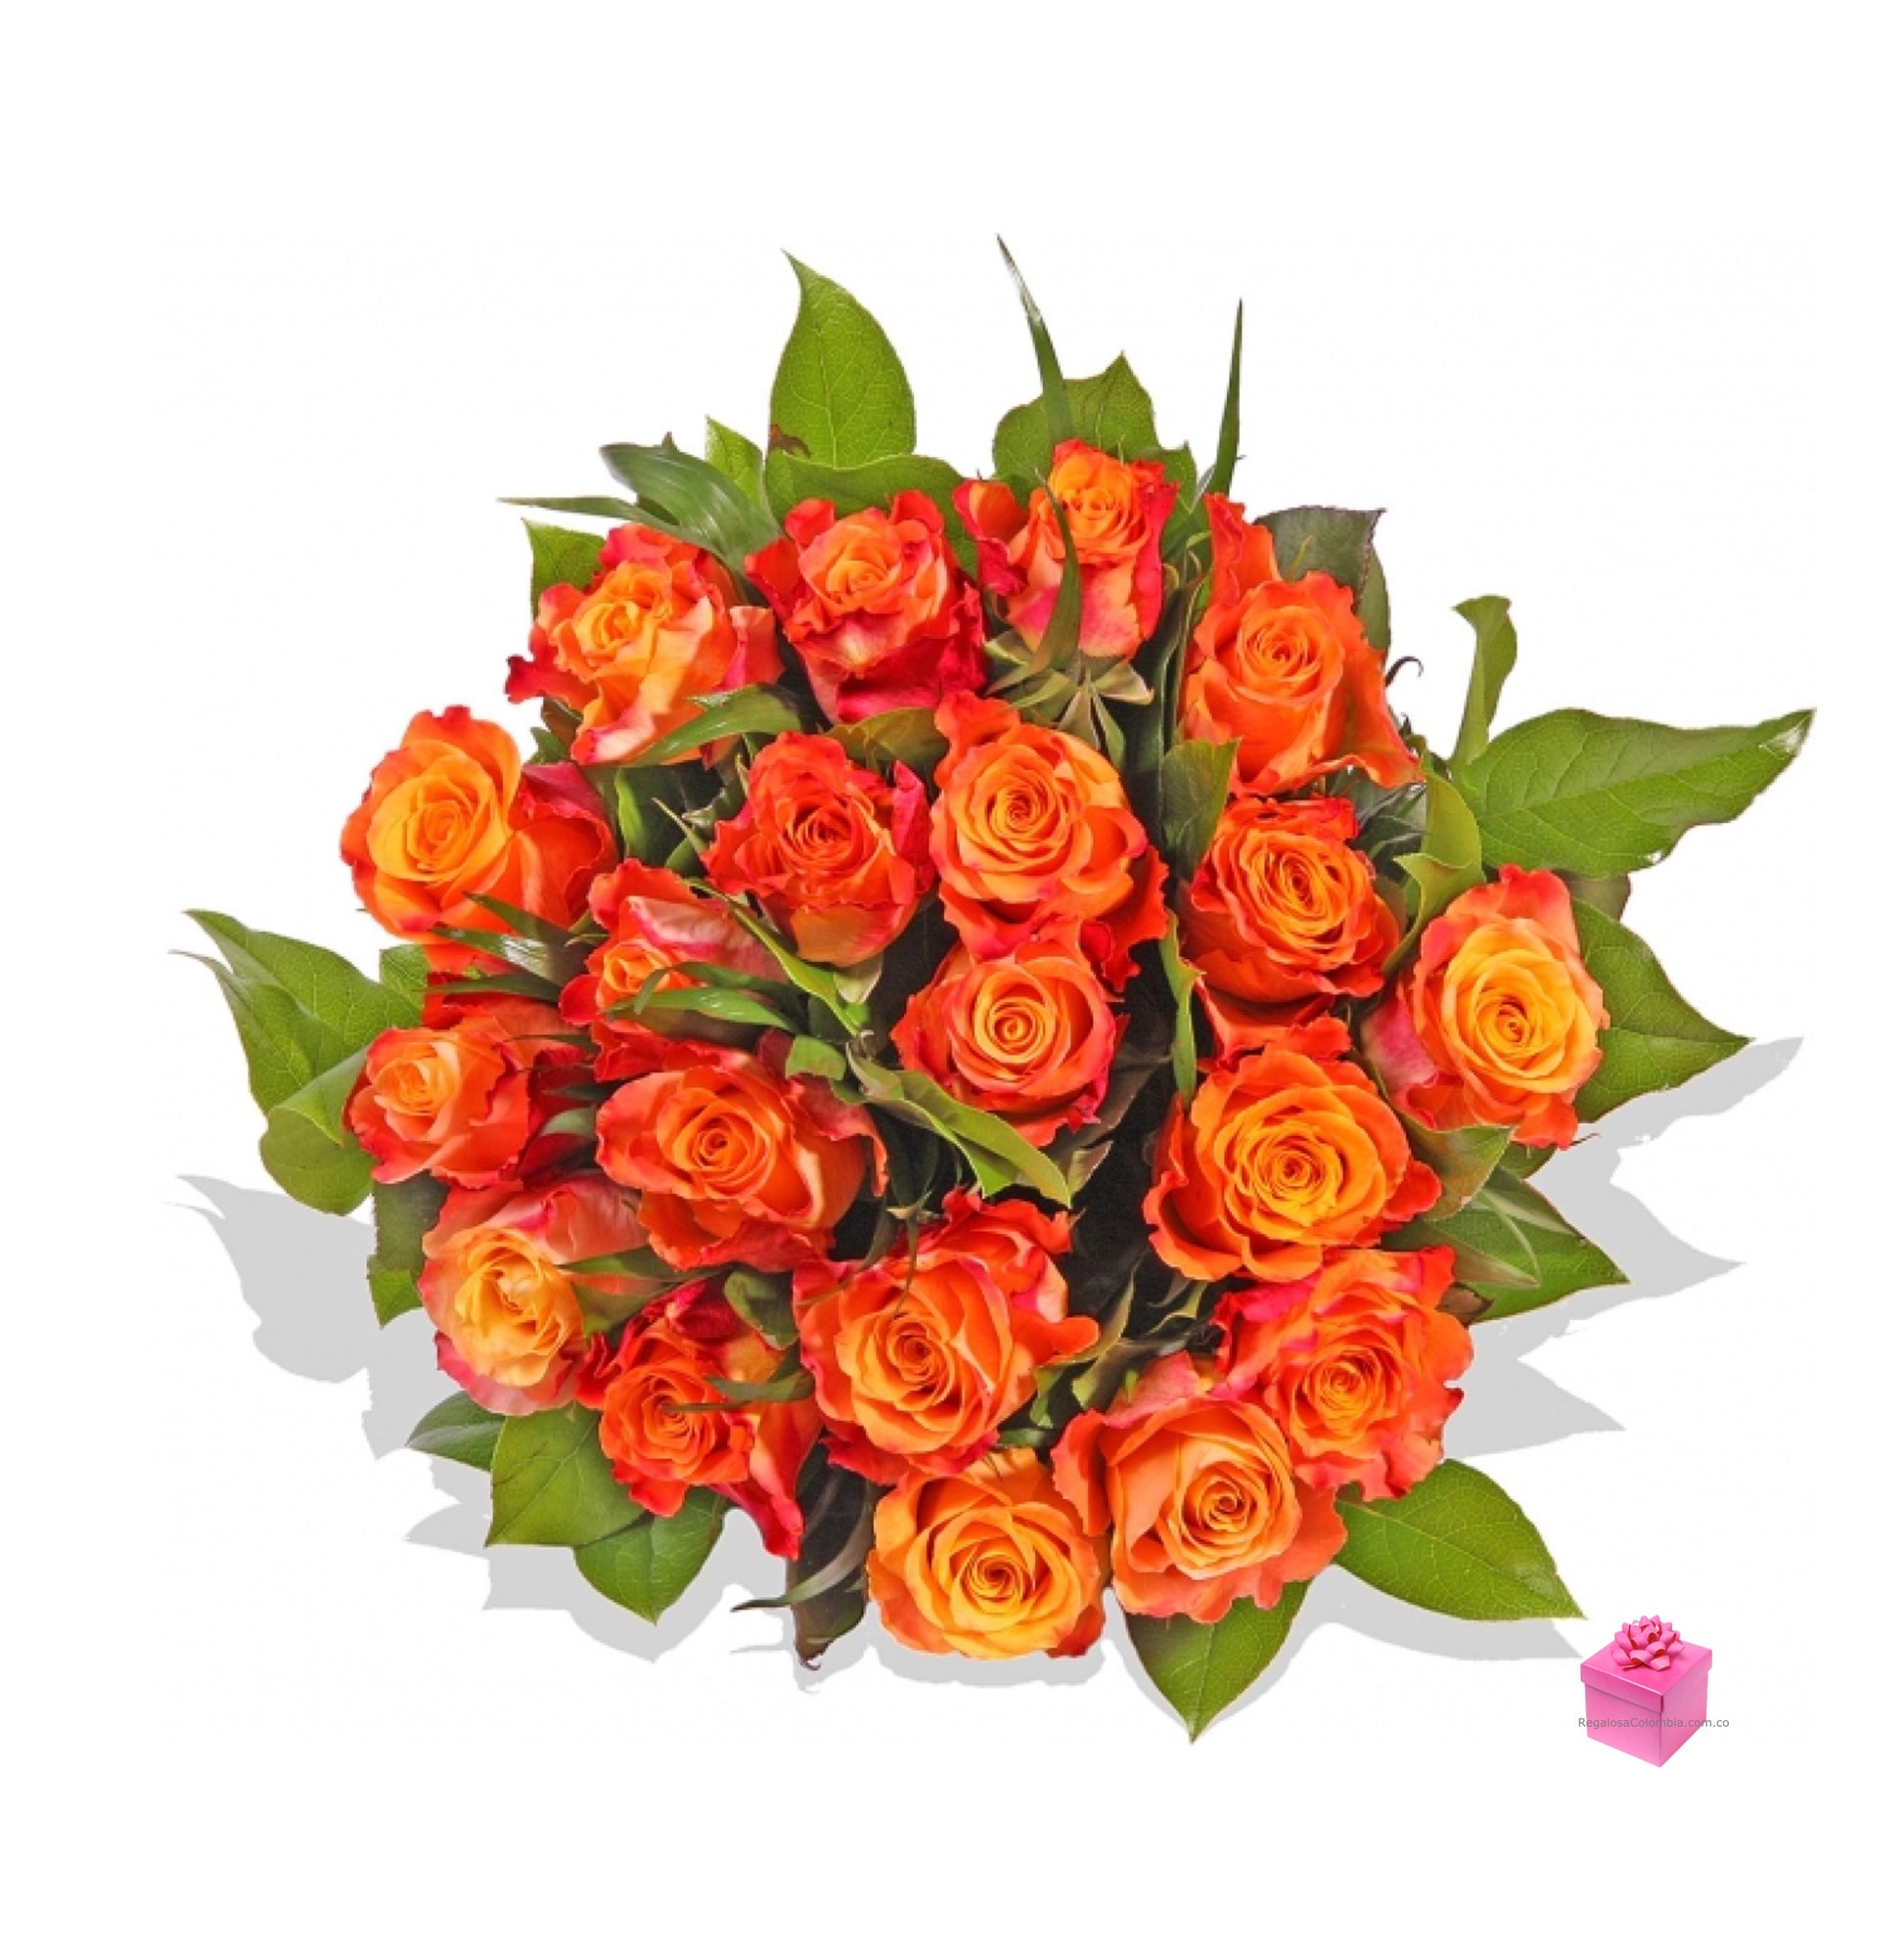 Bouquet de Rosas premium Orange. Envíos a Colombia  Envía este exquisito bouquet de 24 Rosas de tallo largo color naranja a Colombia.